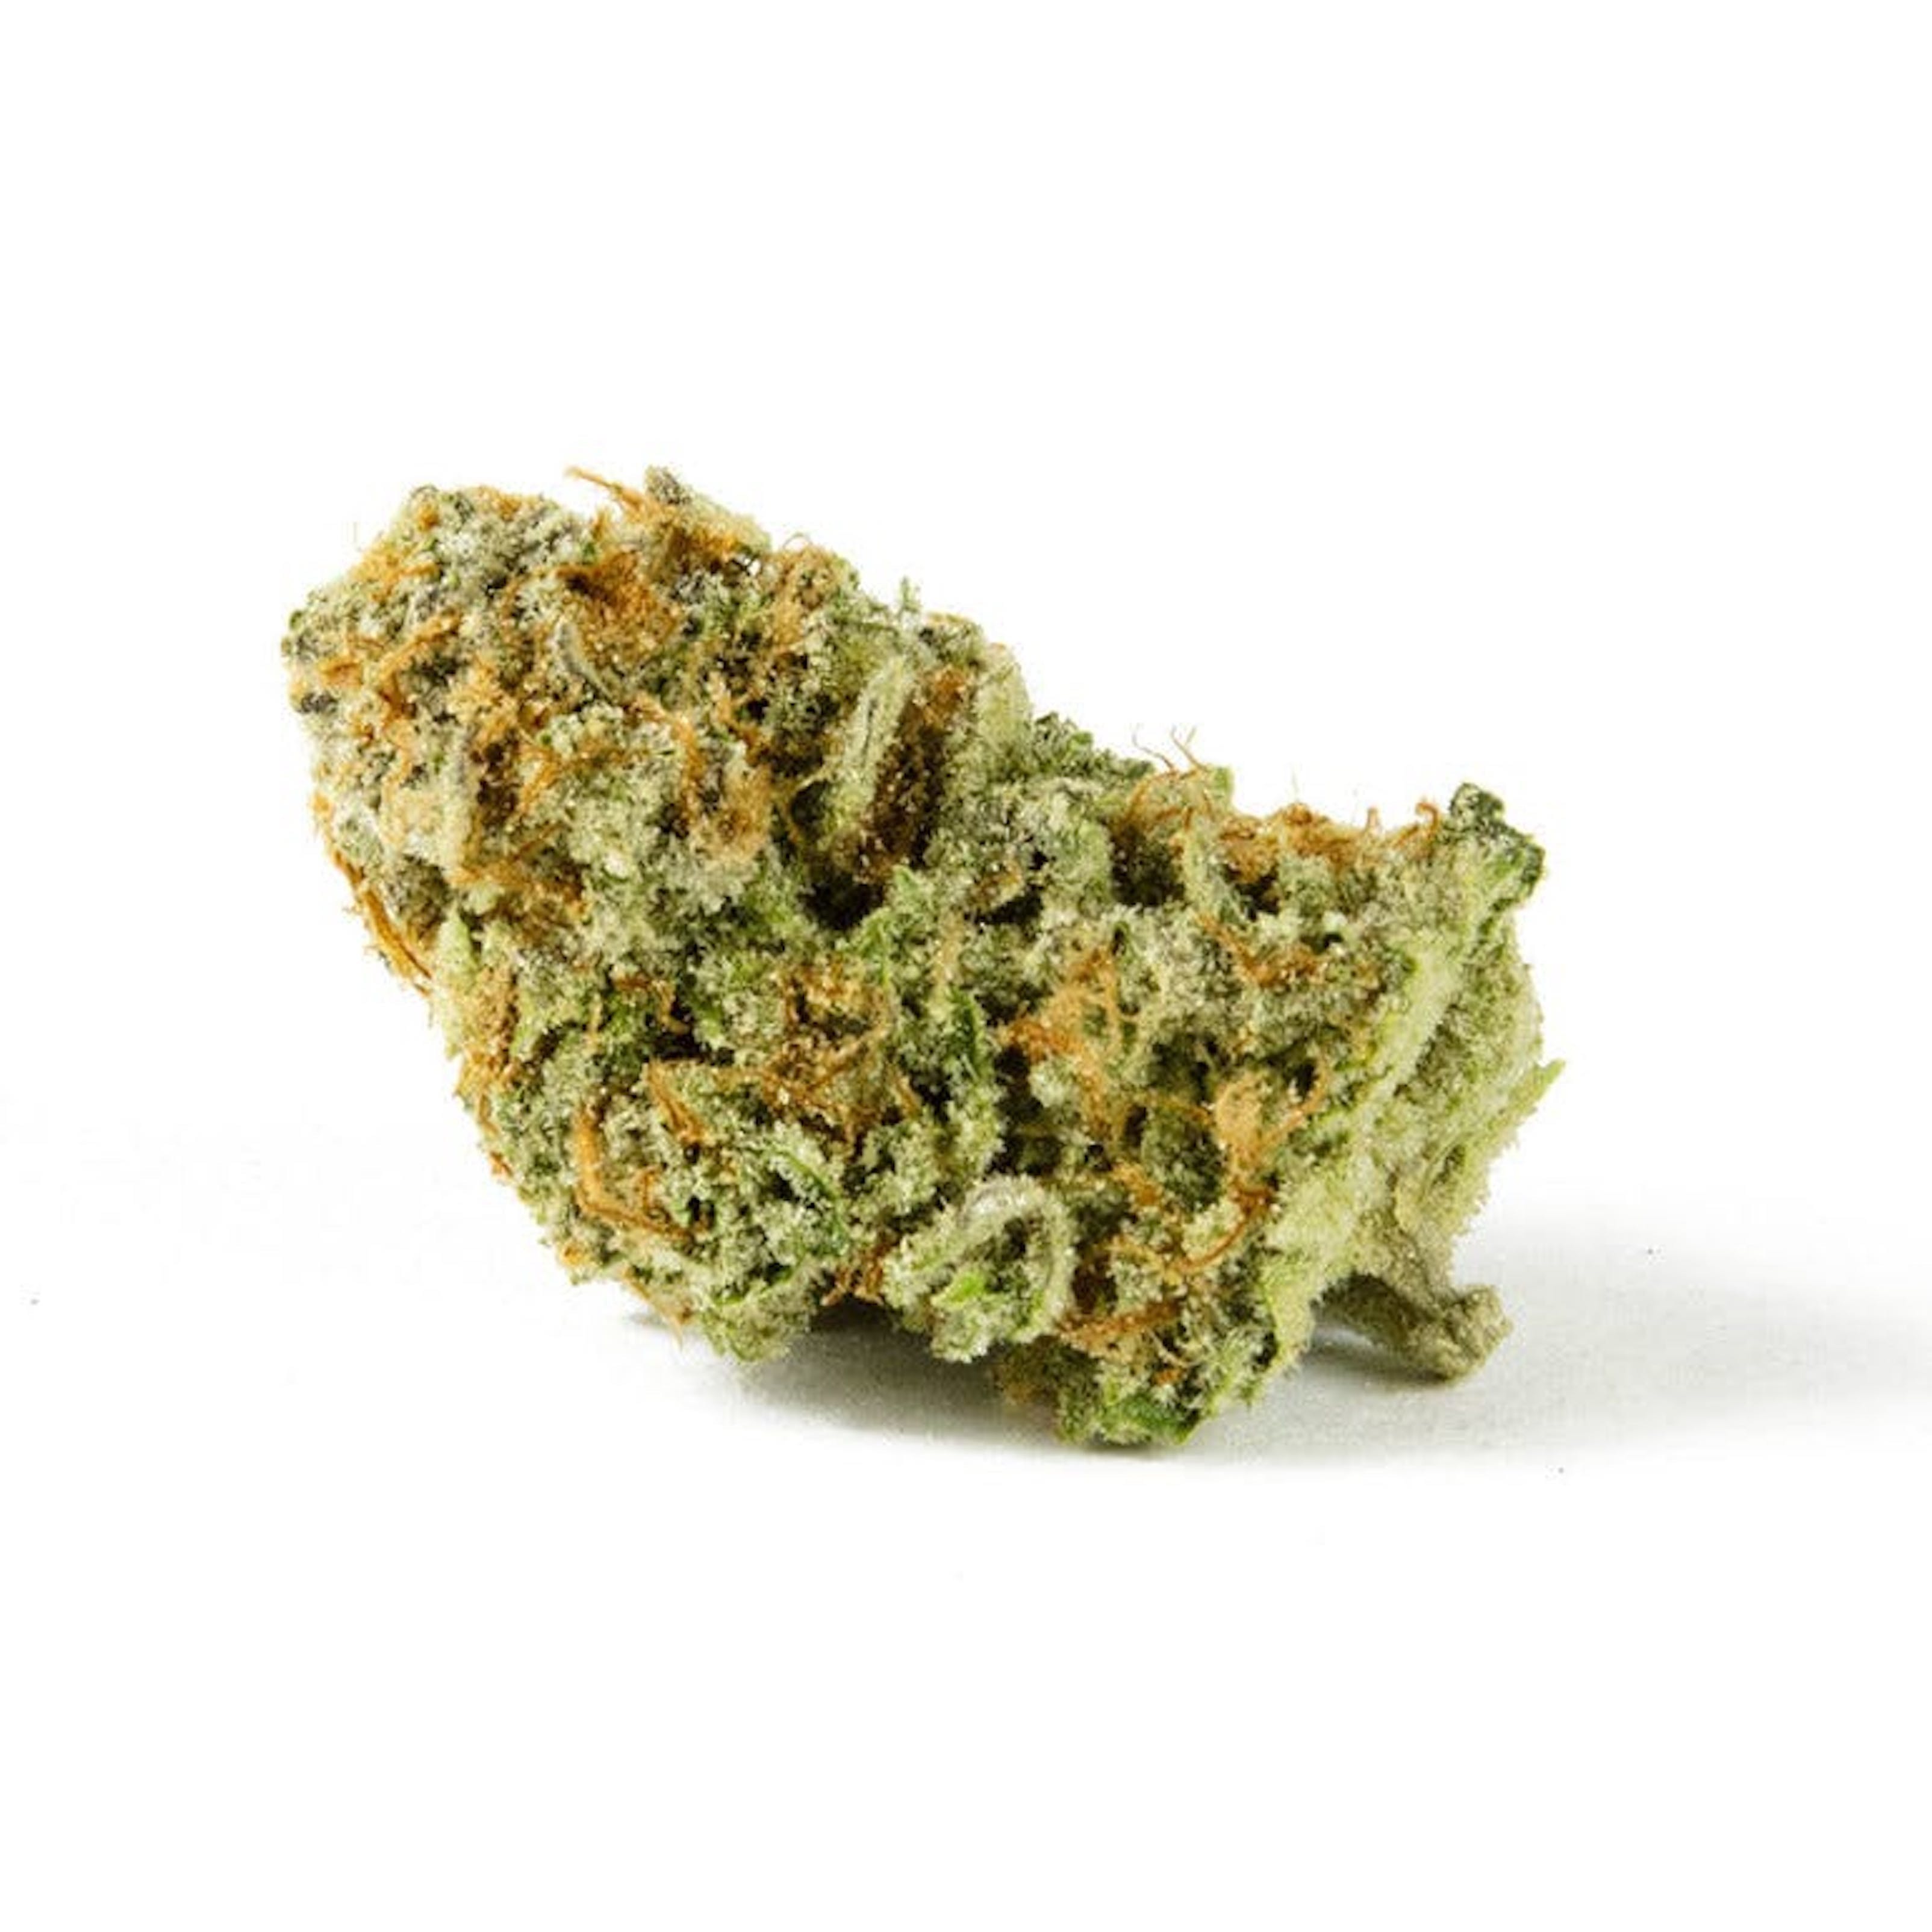 marijuana-dispensaries-1515-n-cahuenga-blvd-los-angeles-smooth-power-plant-3-5g-2436